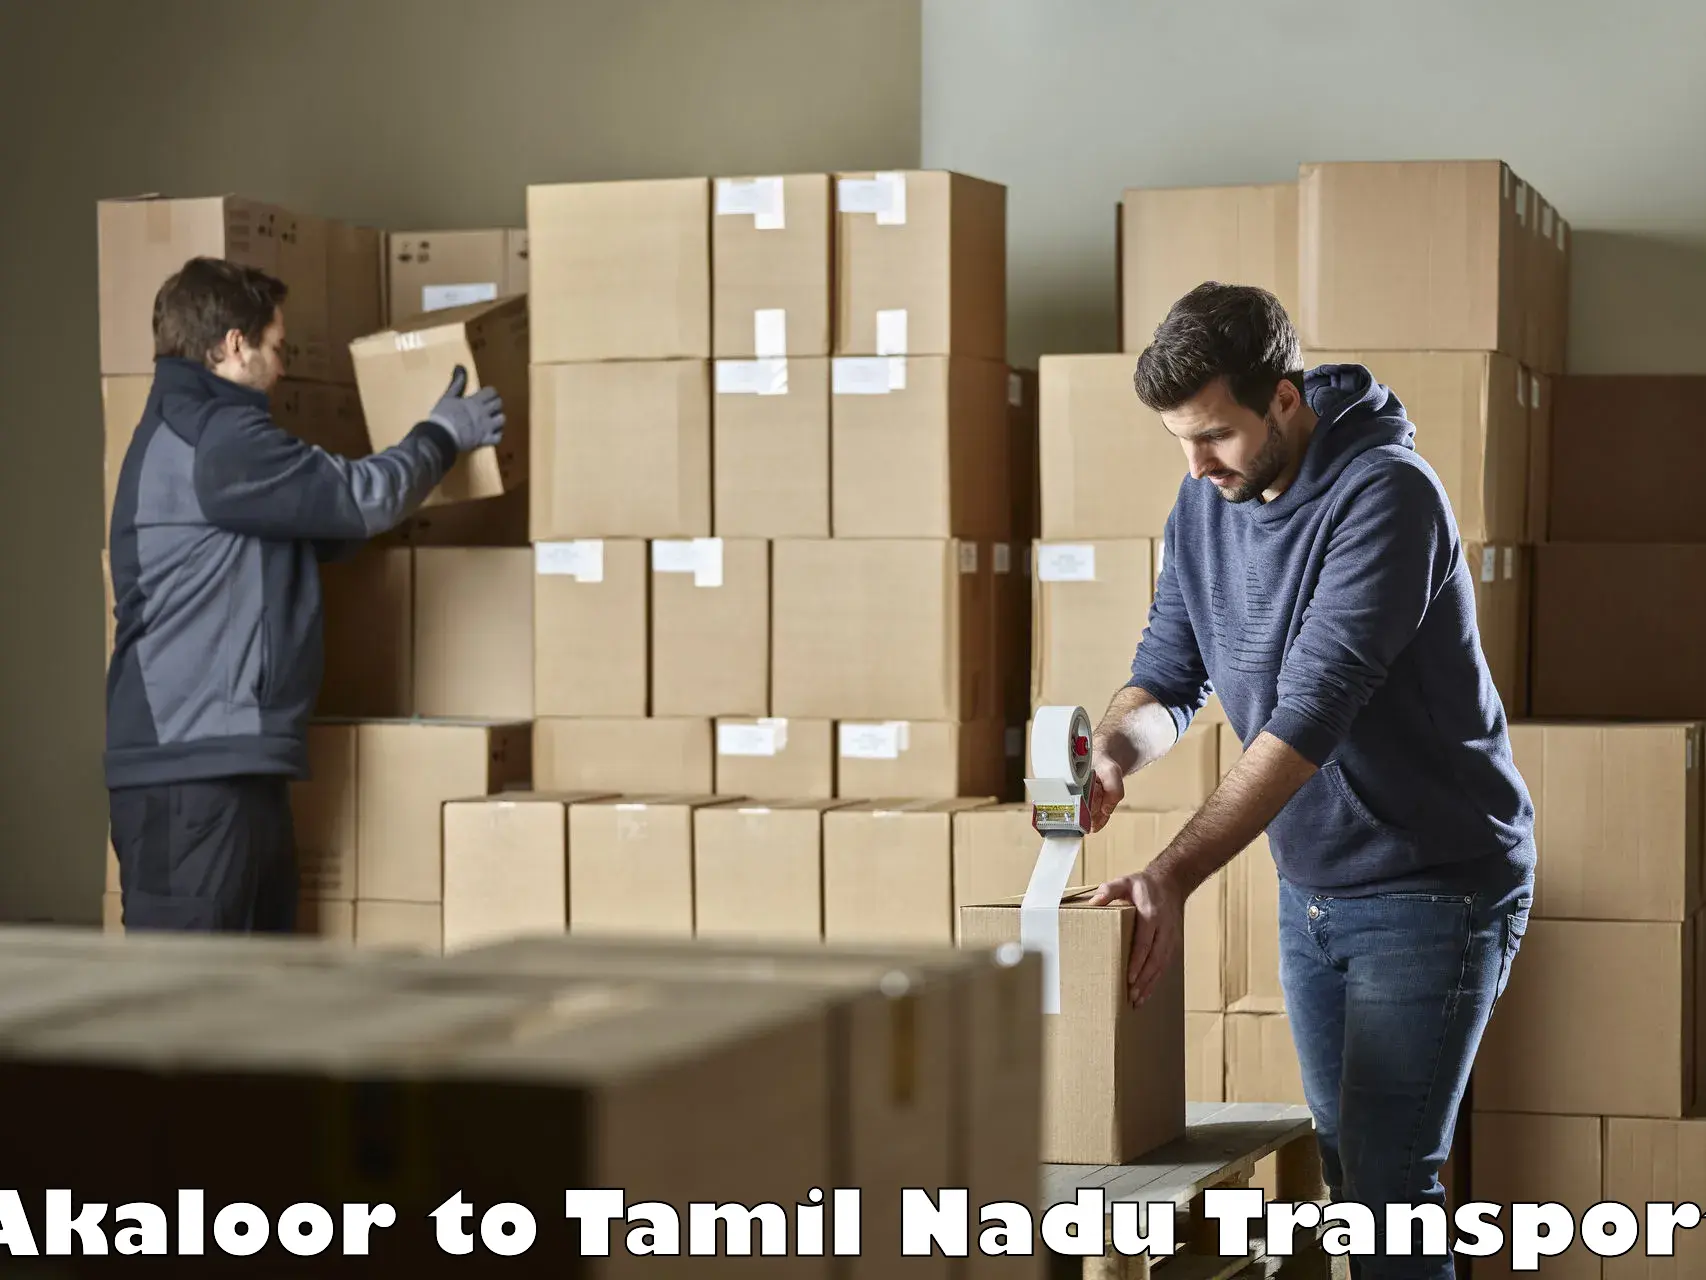 Transport in sharing Akaloor to Tamil Nadu